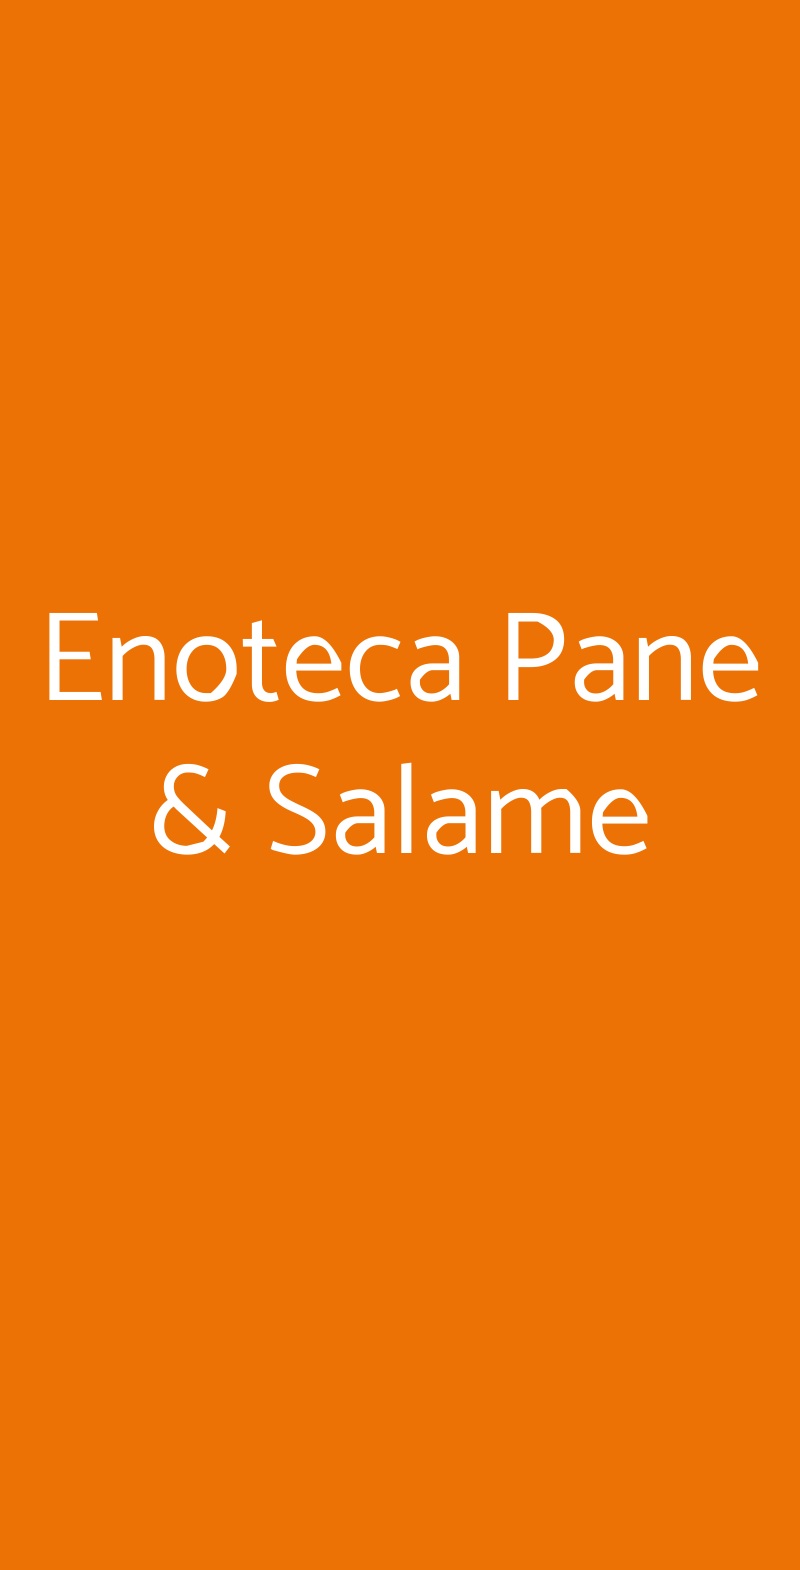 Enoteca Pane & Salame Sant'Angelo di Piove di Sacco menù 1 pagina